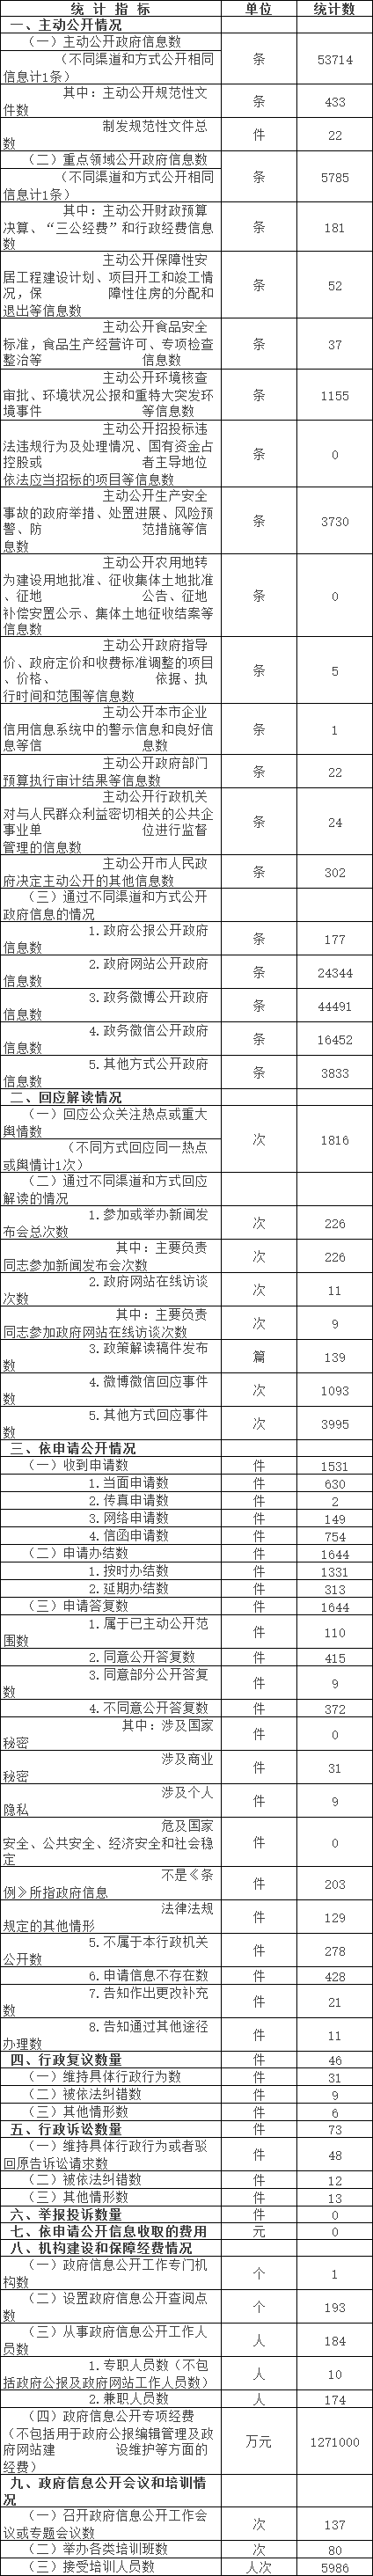 北京市东城区人民政府信息公开情况统计表(2017年度)